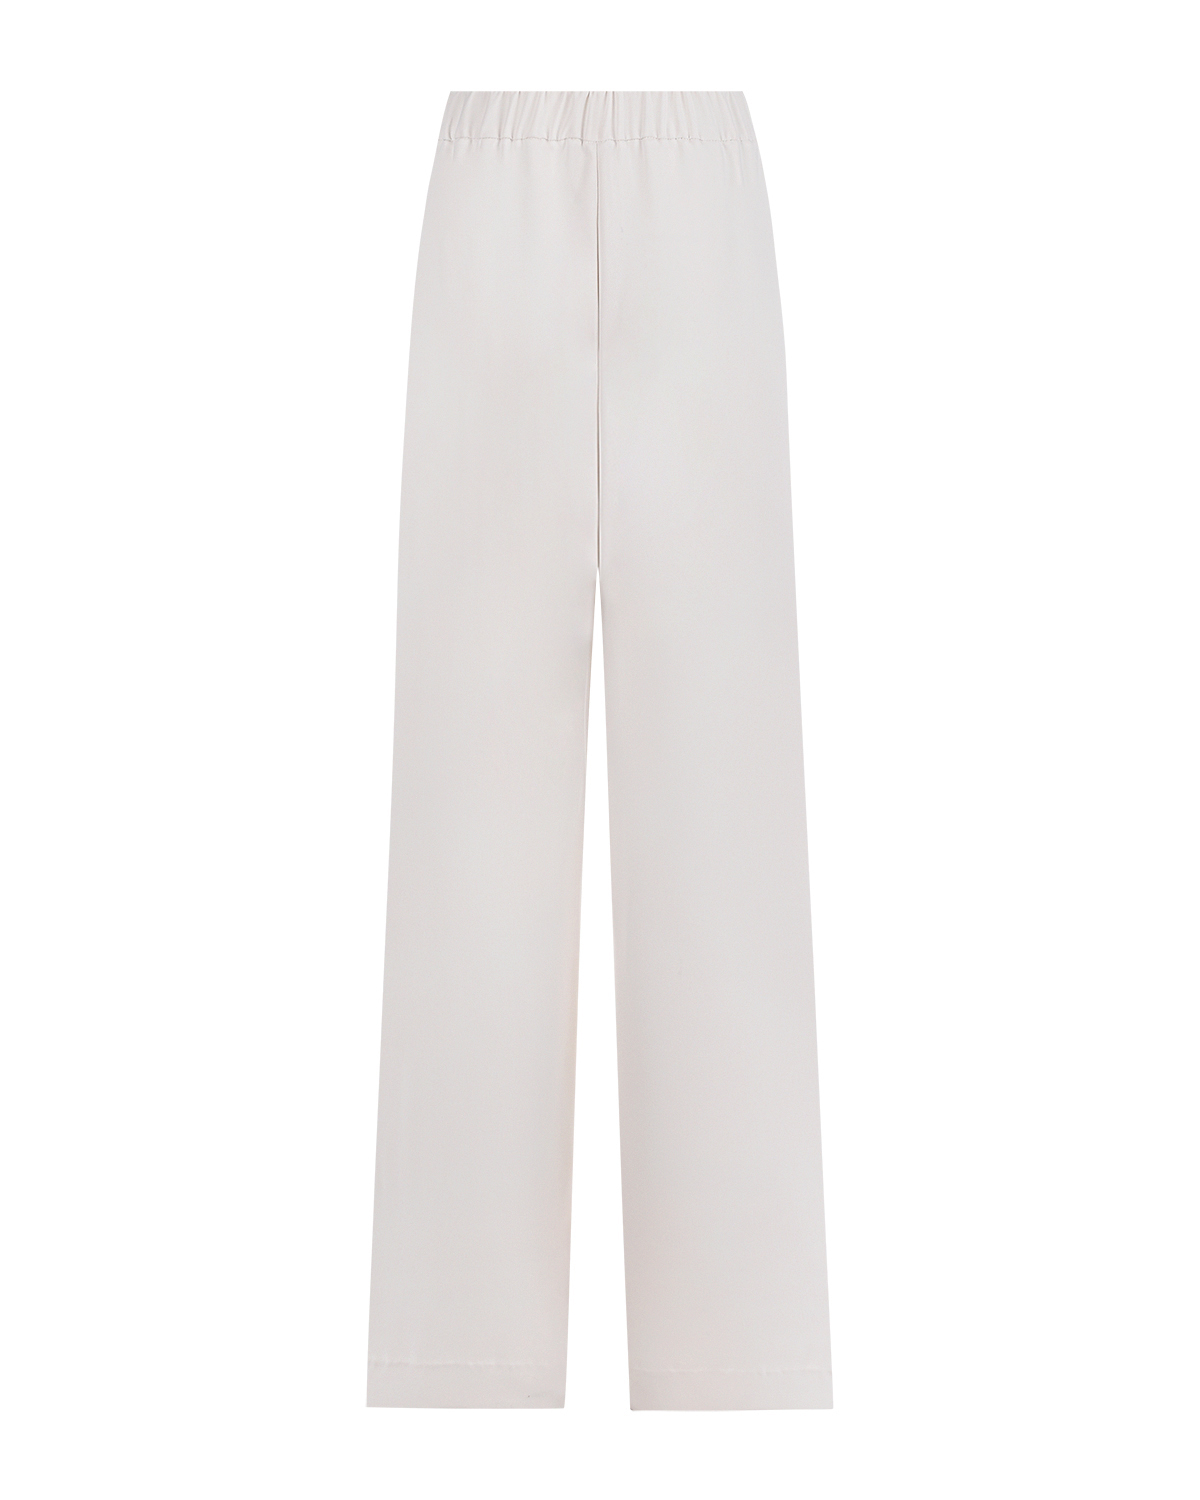 Белые брюки прямого кроя Parosh, размер 40, цвет белый - фото 5